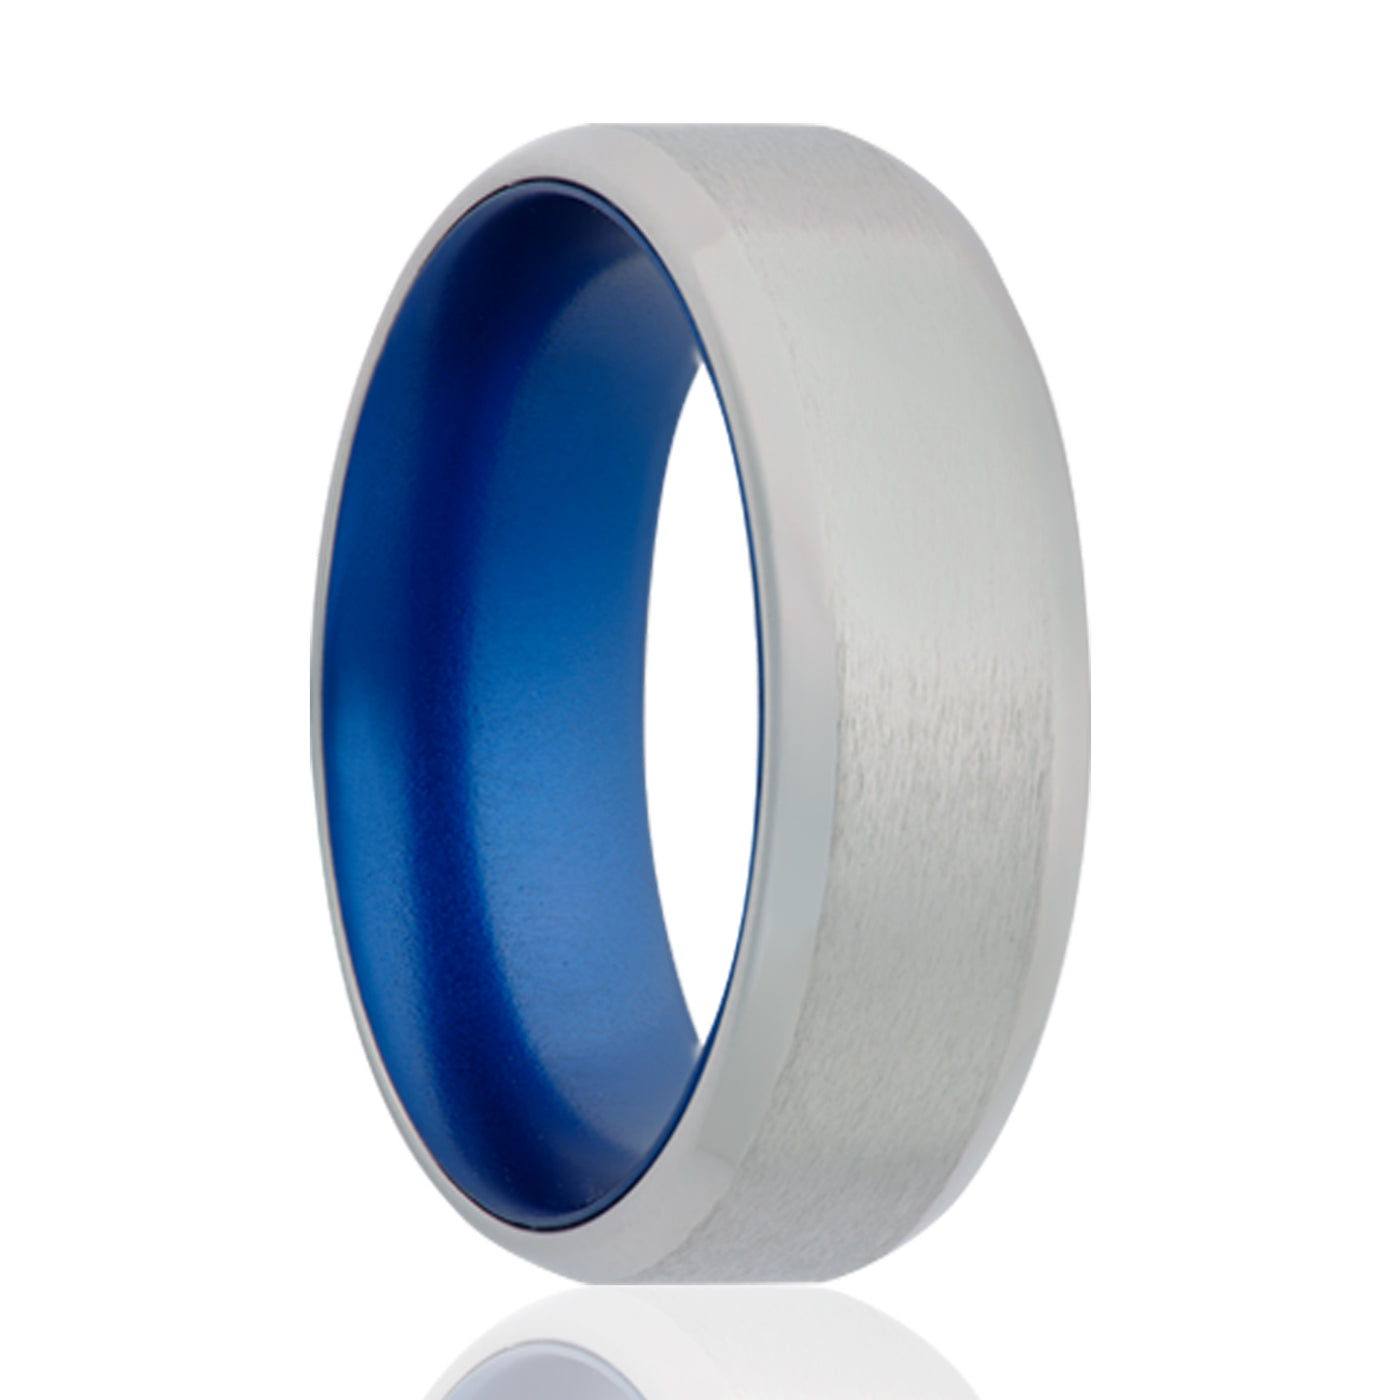 7mm Cobalt satin finish beveled edge anodized sleeve ring